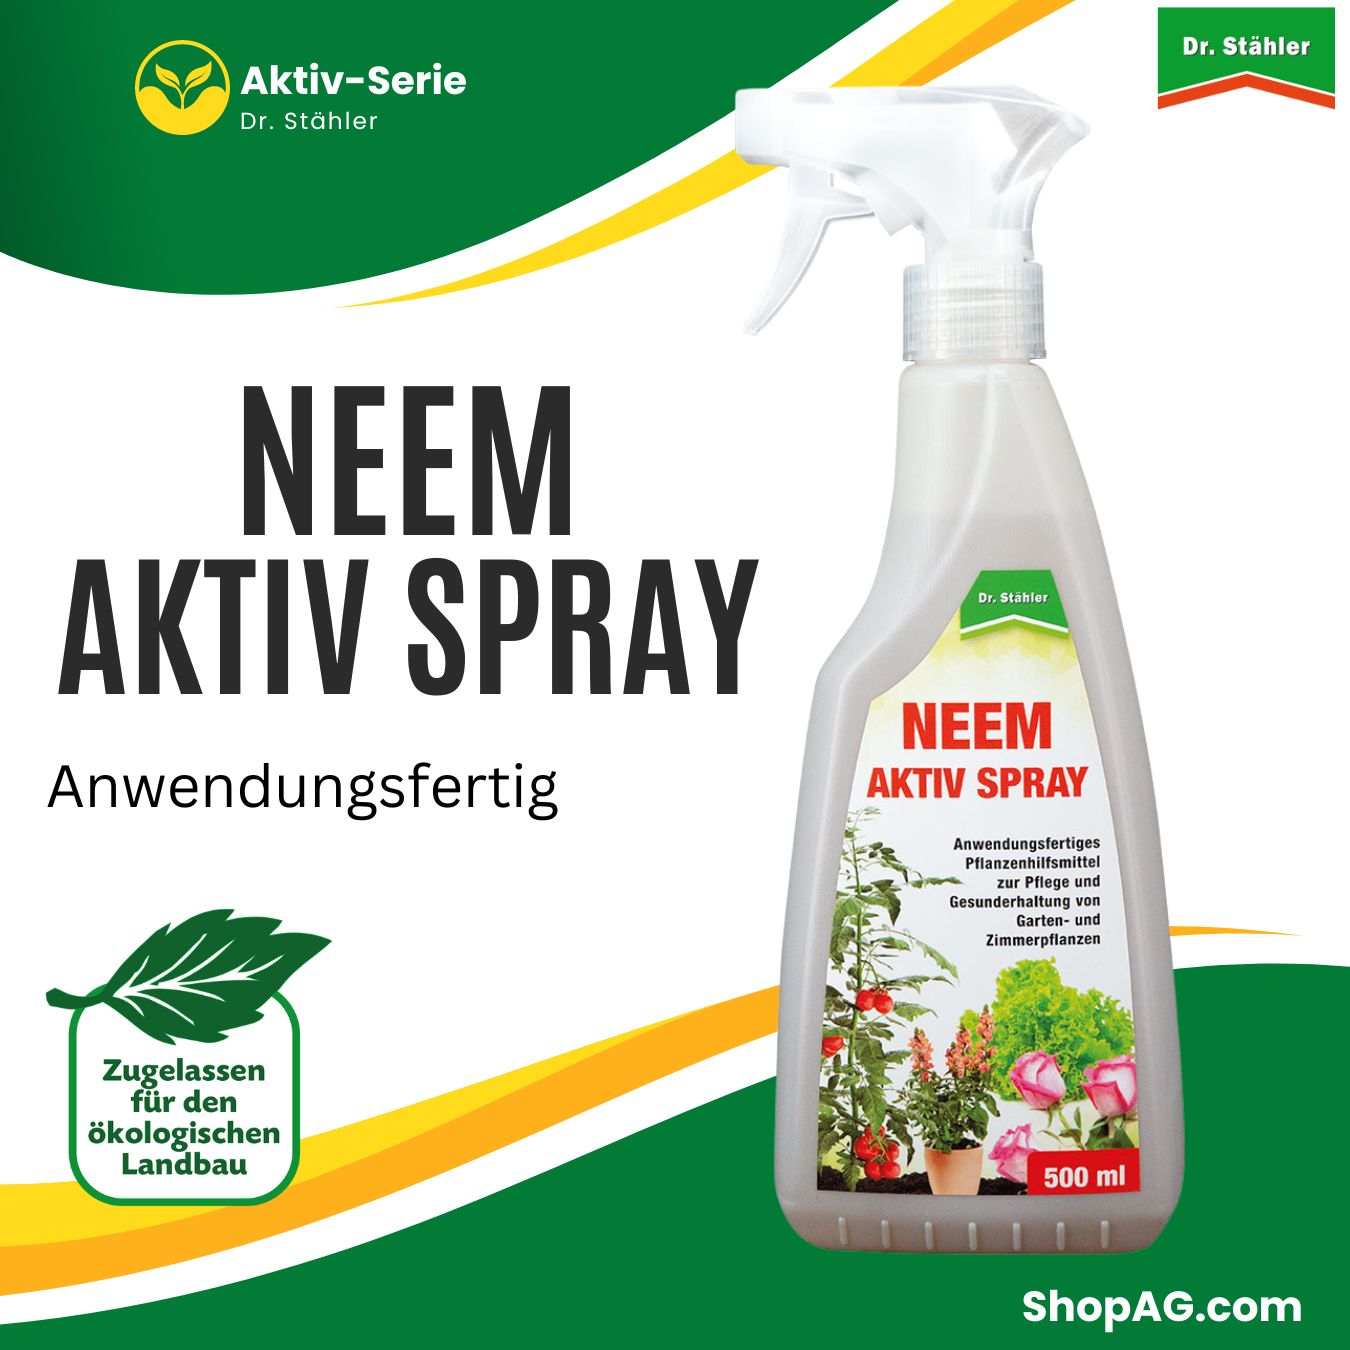 Neem Aktiv Spray anwendungsfertiges Pflanzenhilfsmittel mit bioaktiven Stoffen